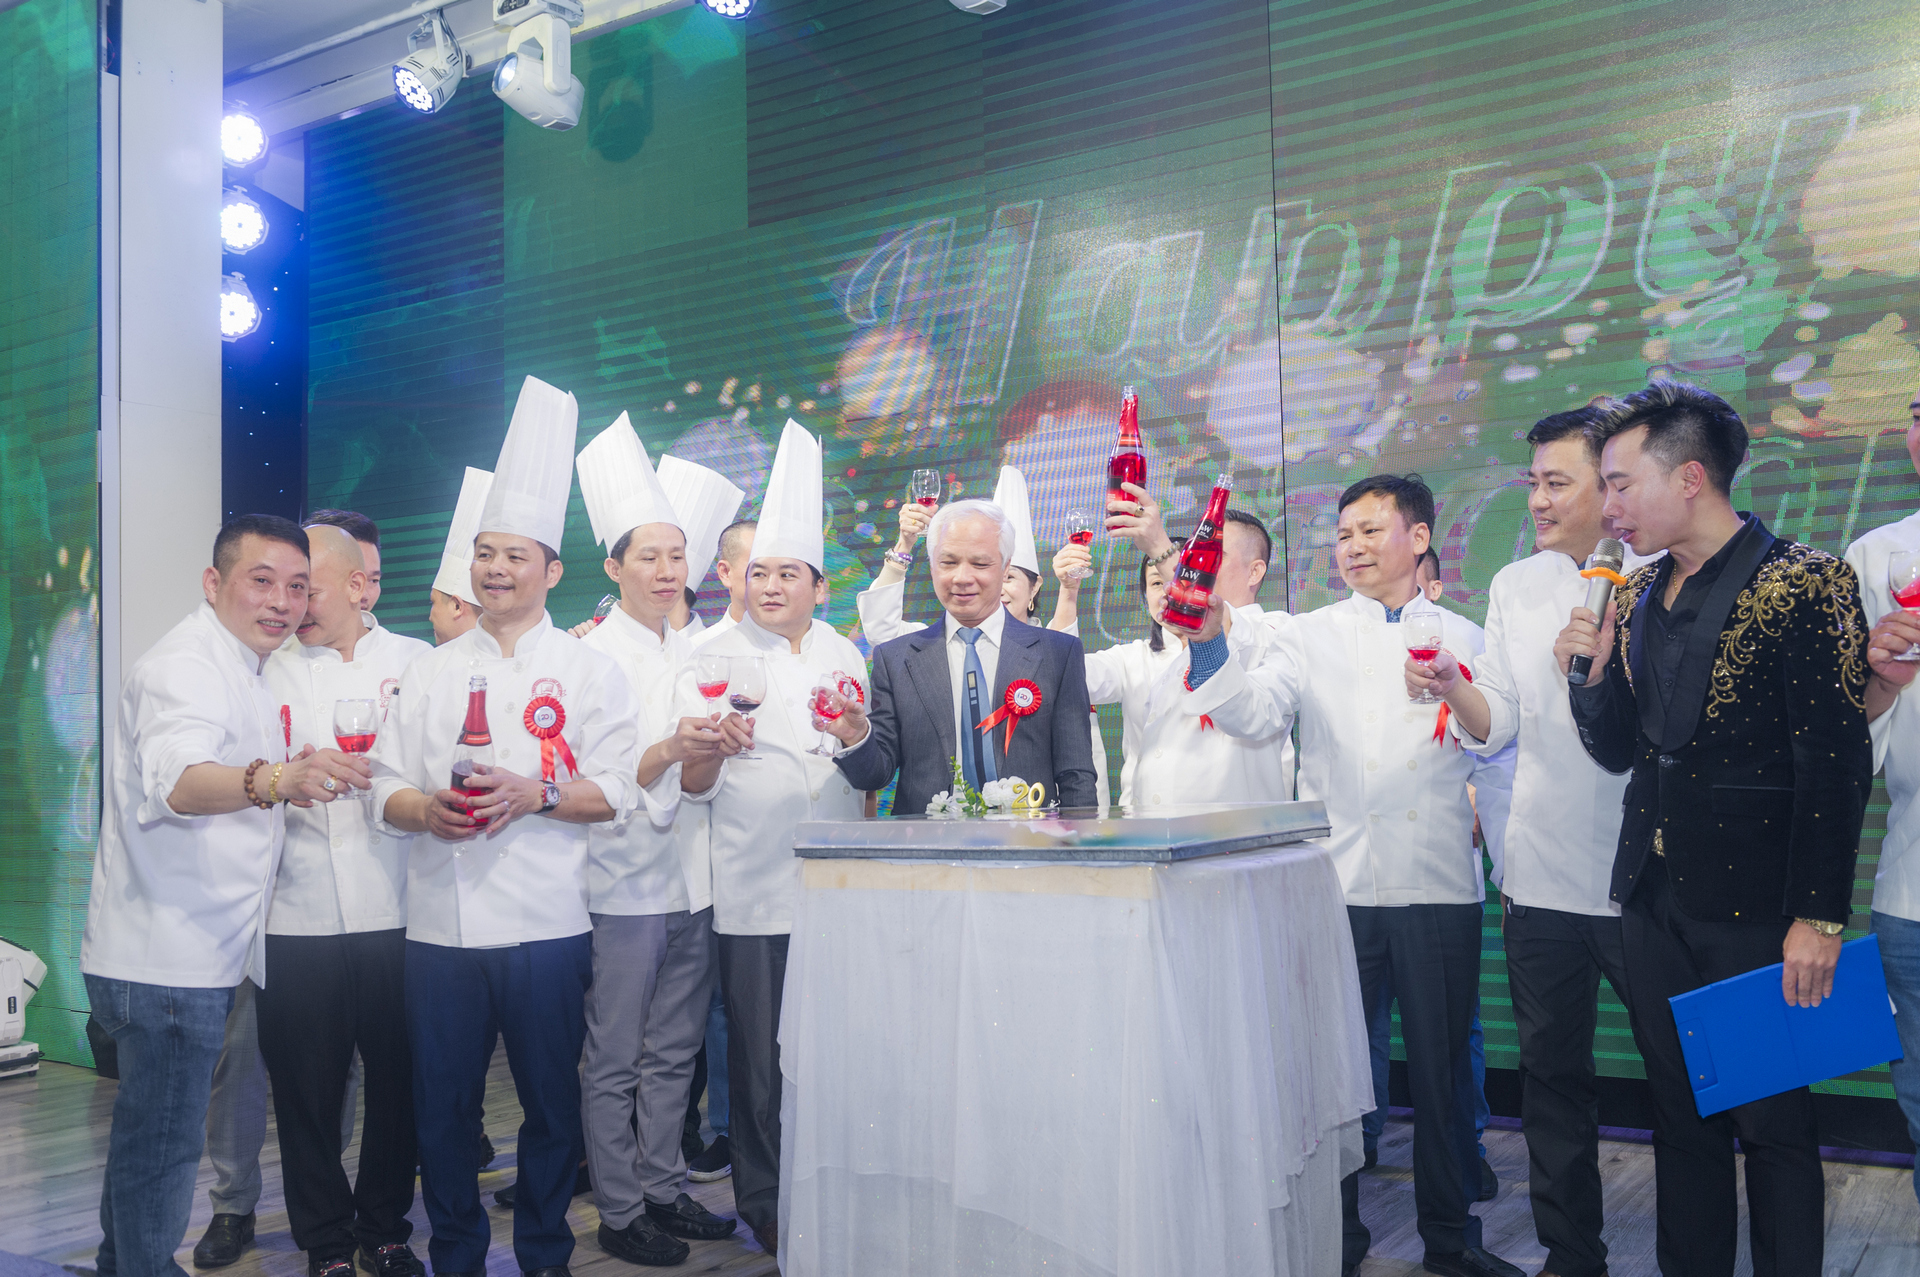 Hội đầu bếp chuyên nghiệp Hải Phòng kỷ niệm 20 năm thành lập